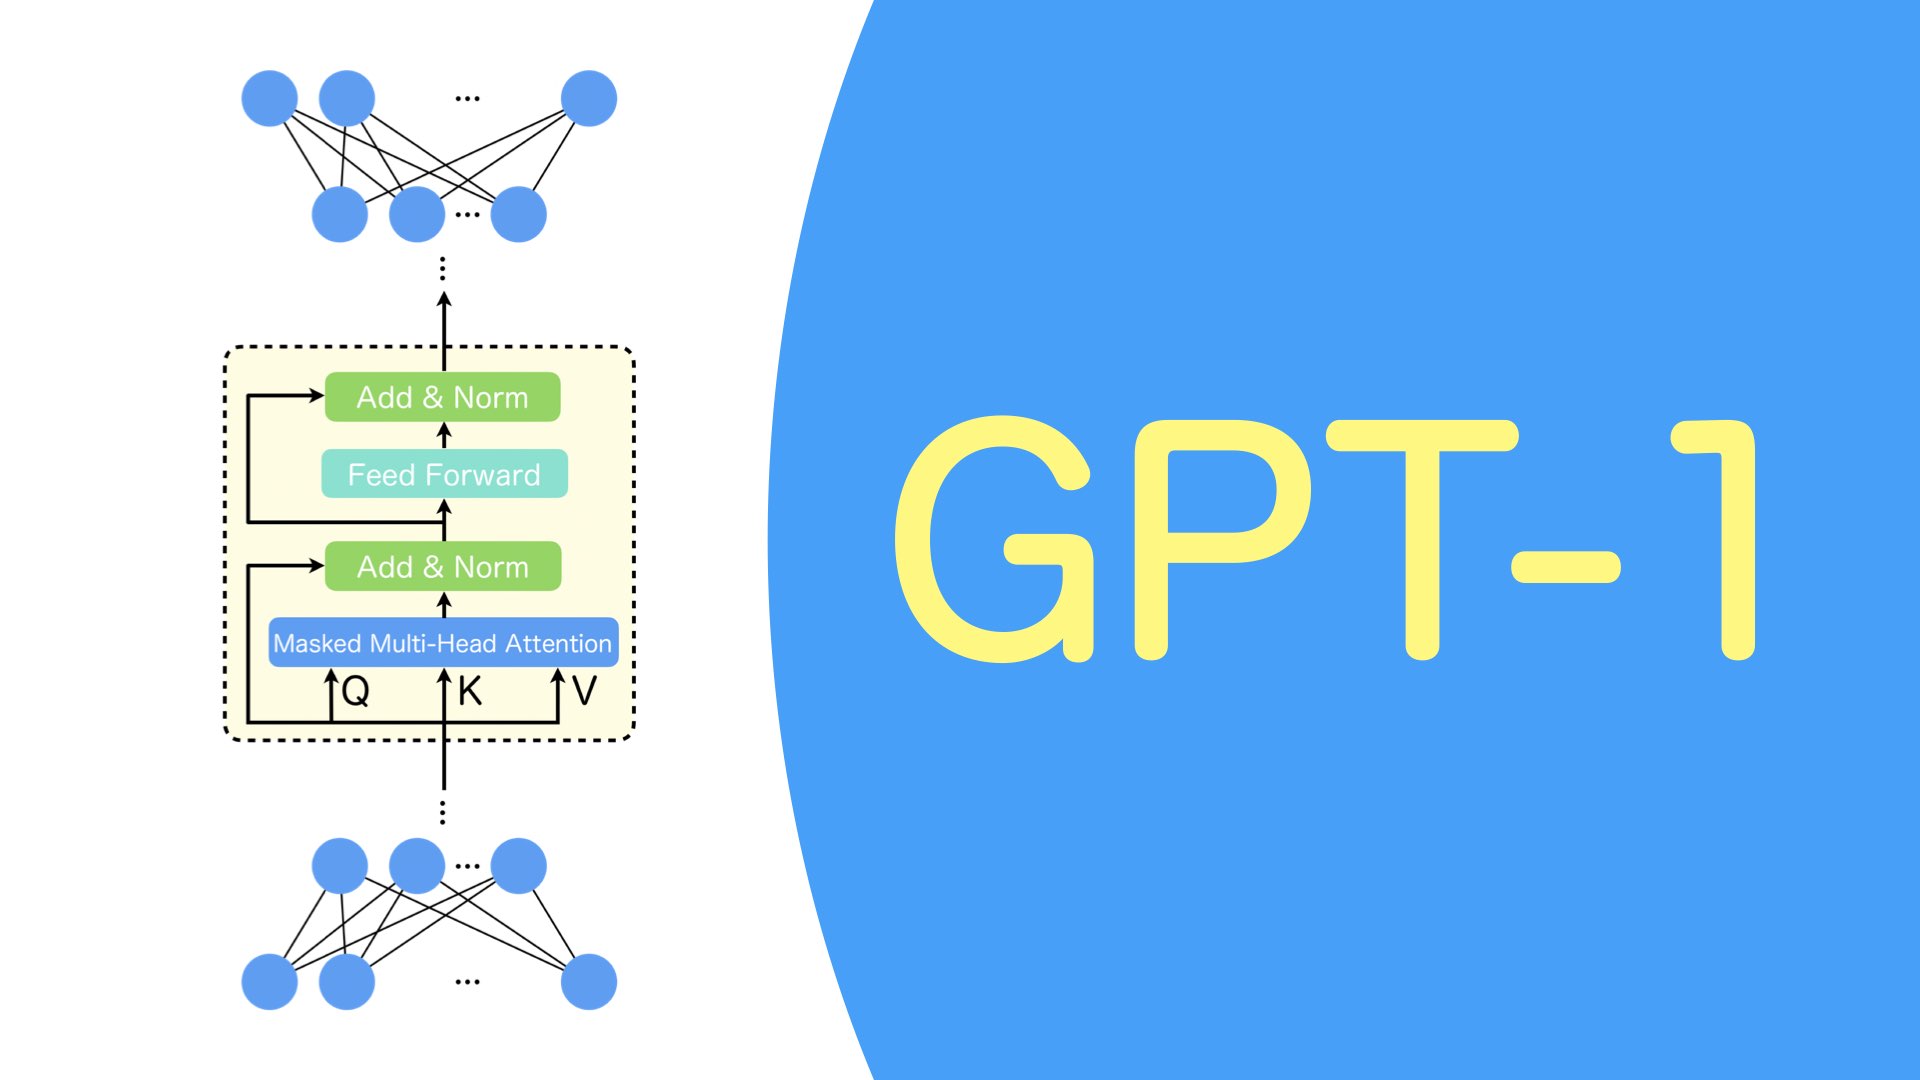 4 Keunggulan terbaru GPT-4
